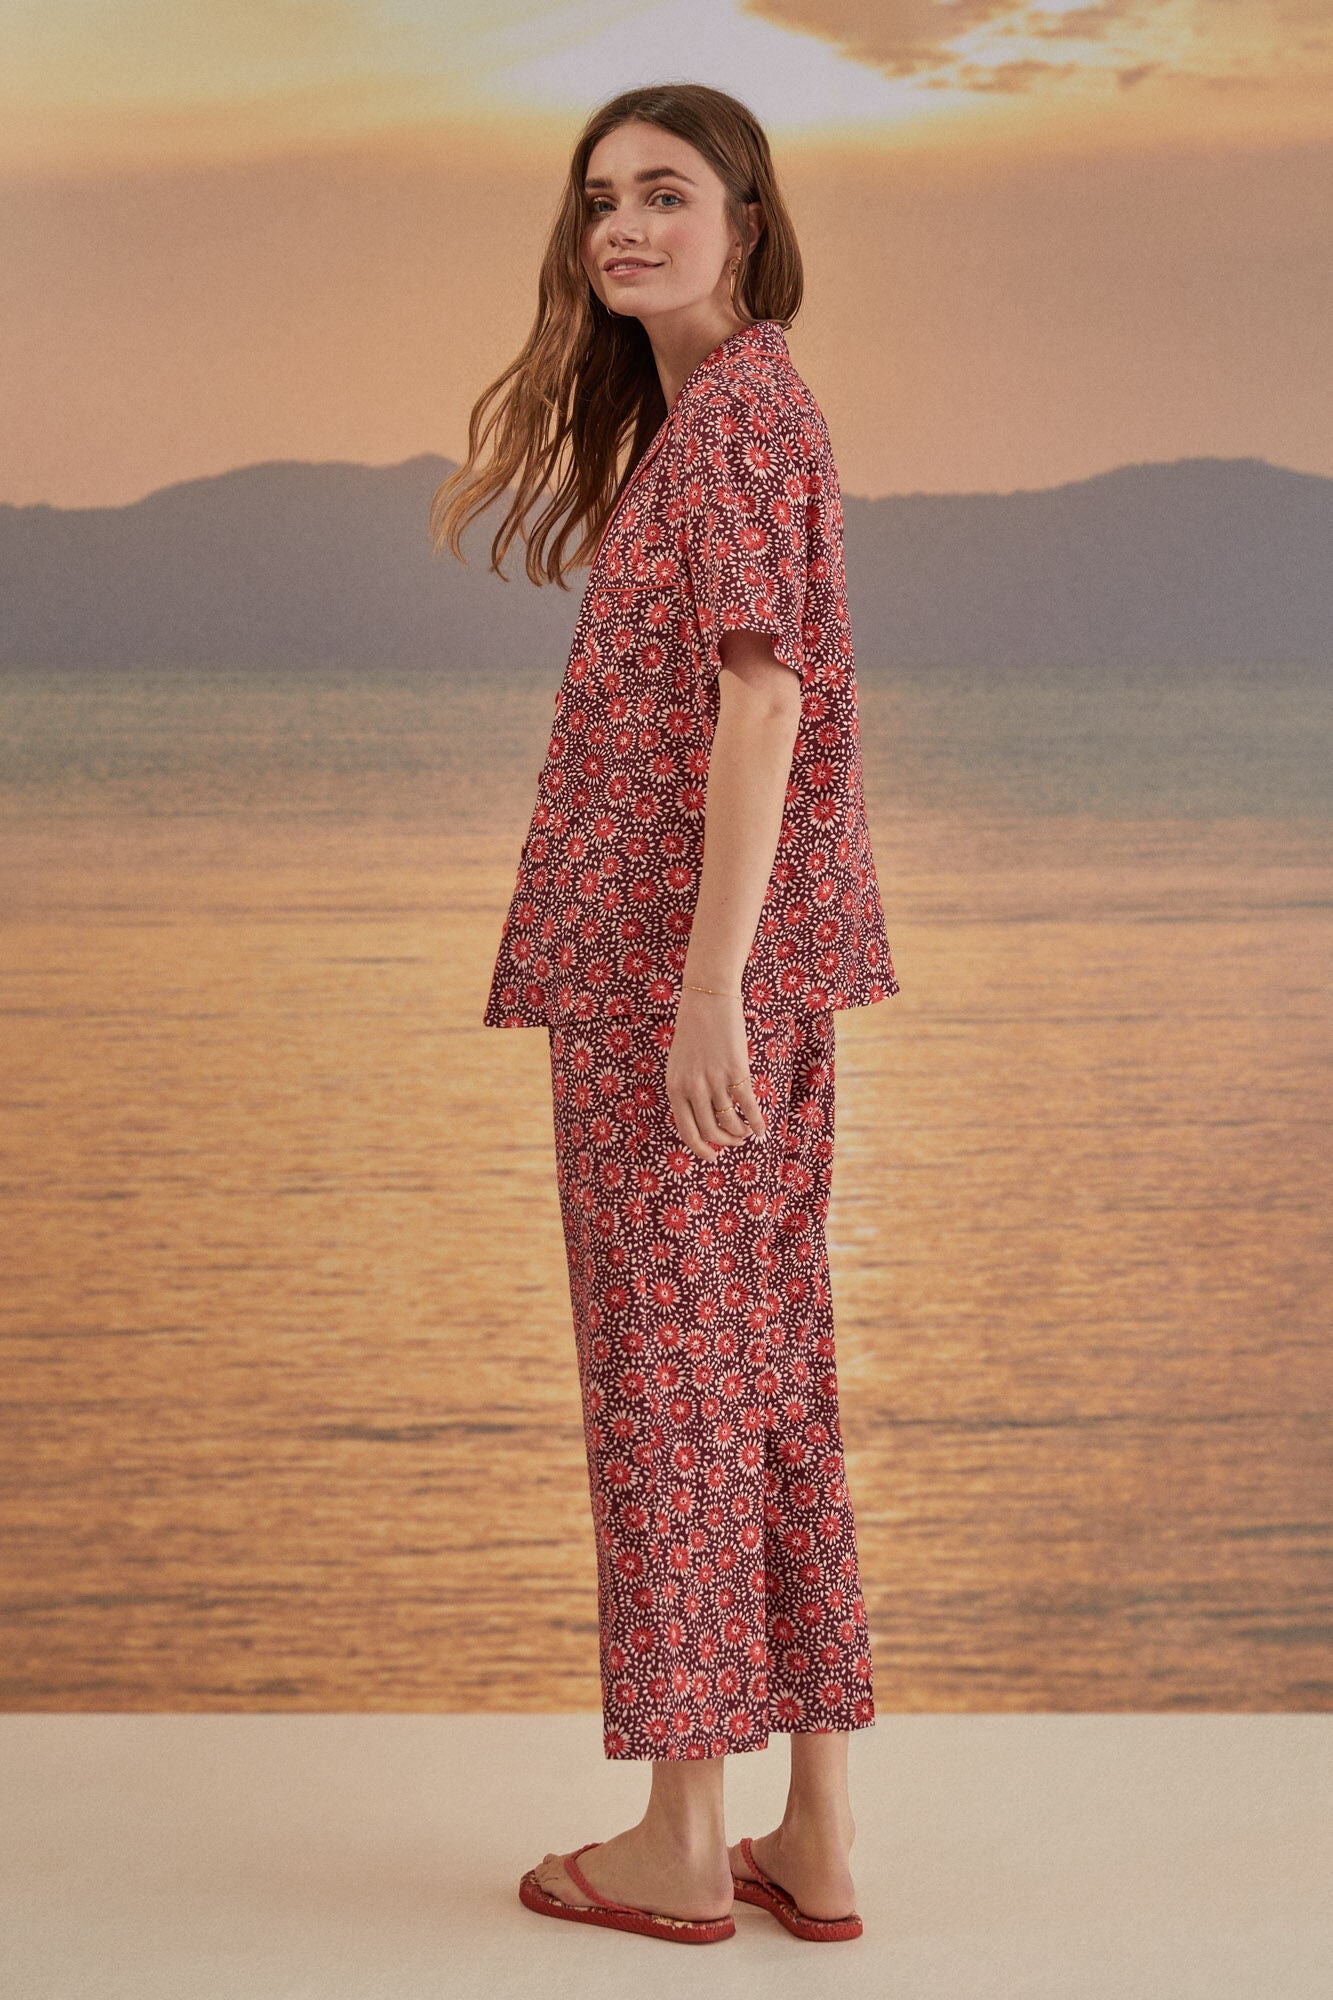 Capri printed shirt pajamas